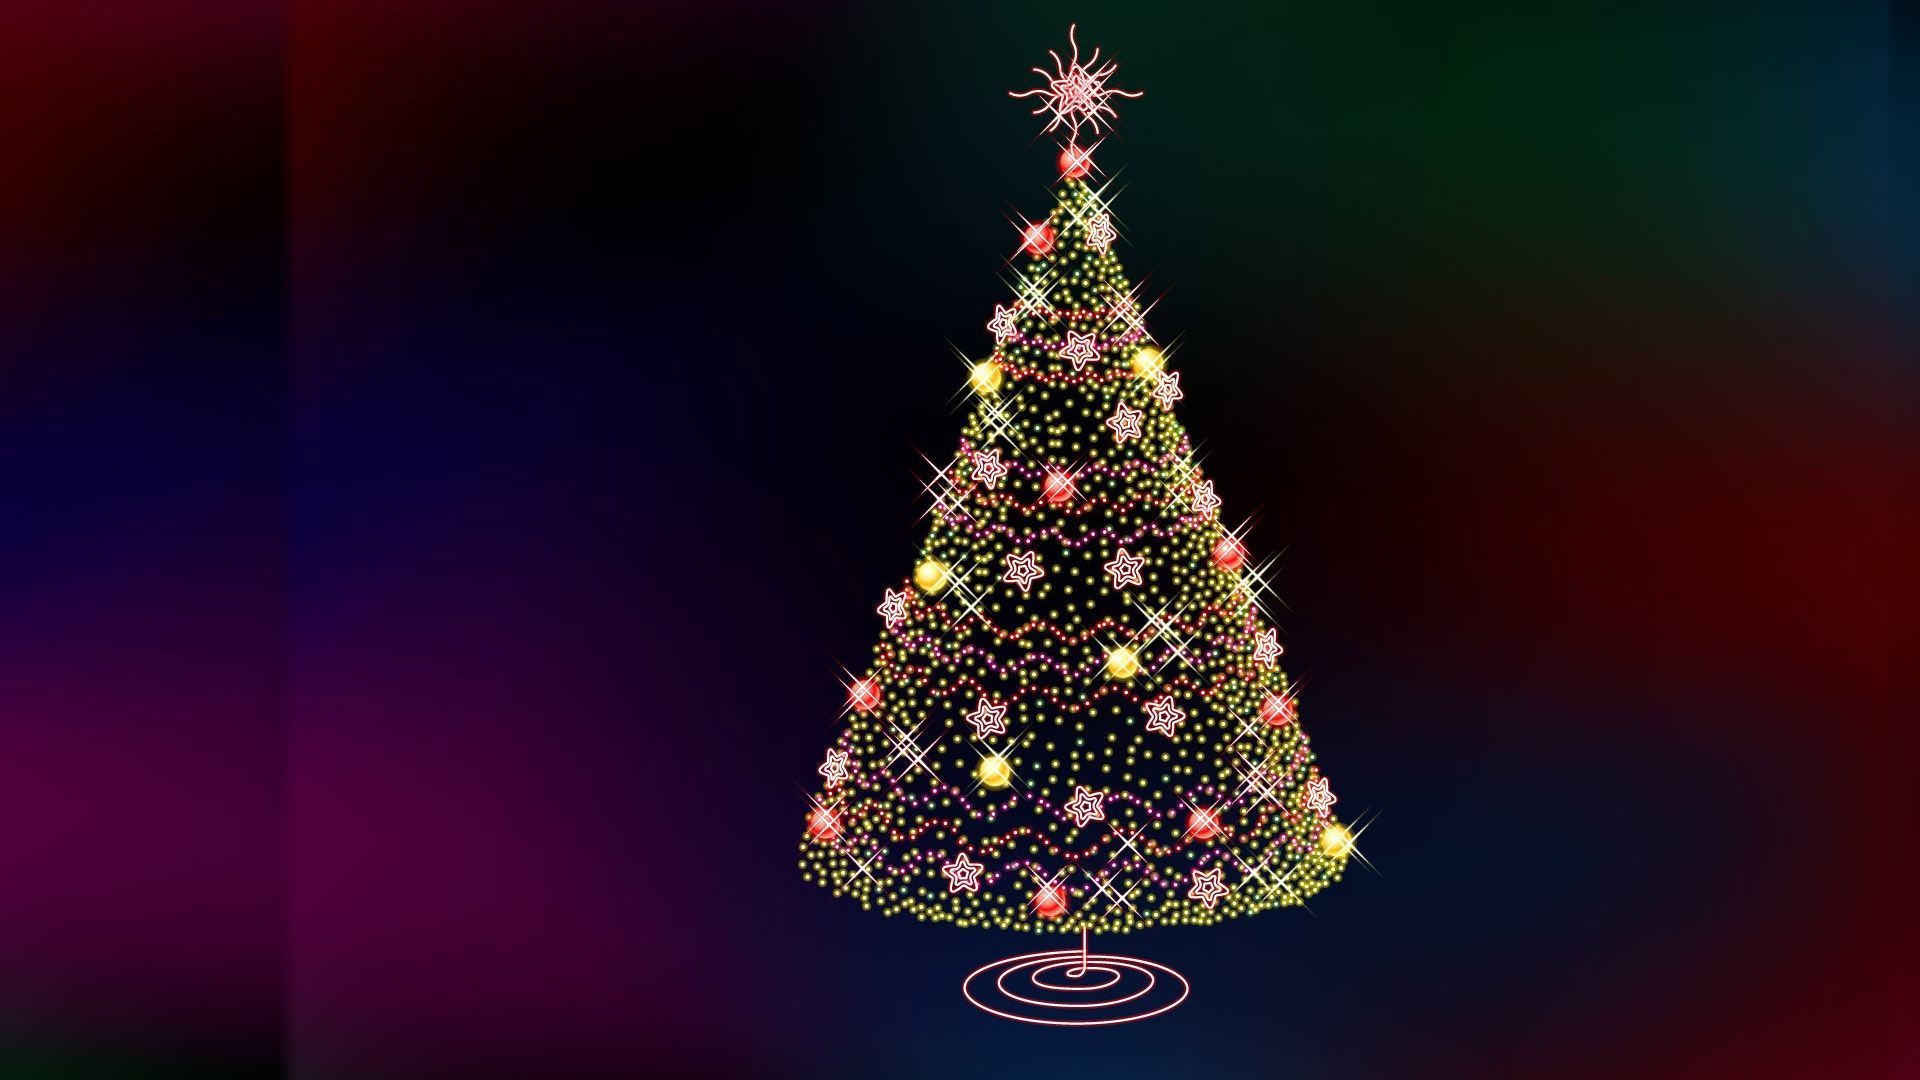 Animated Christmas Desktop Wallpapers, Animated Christmas ...